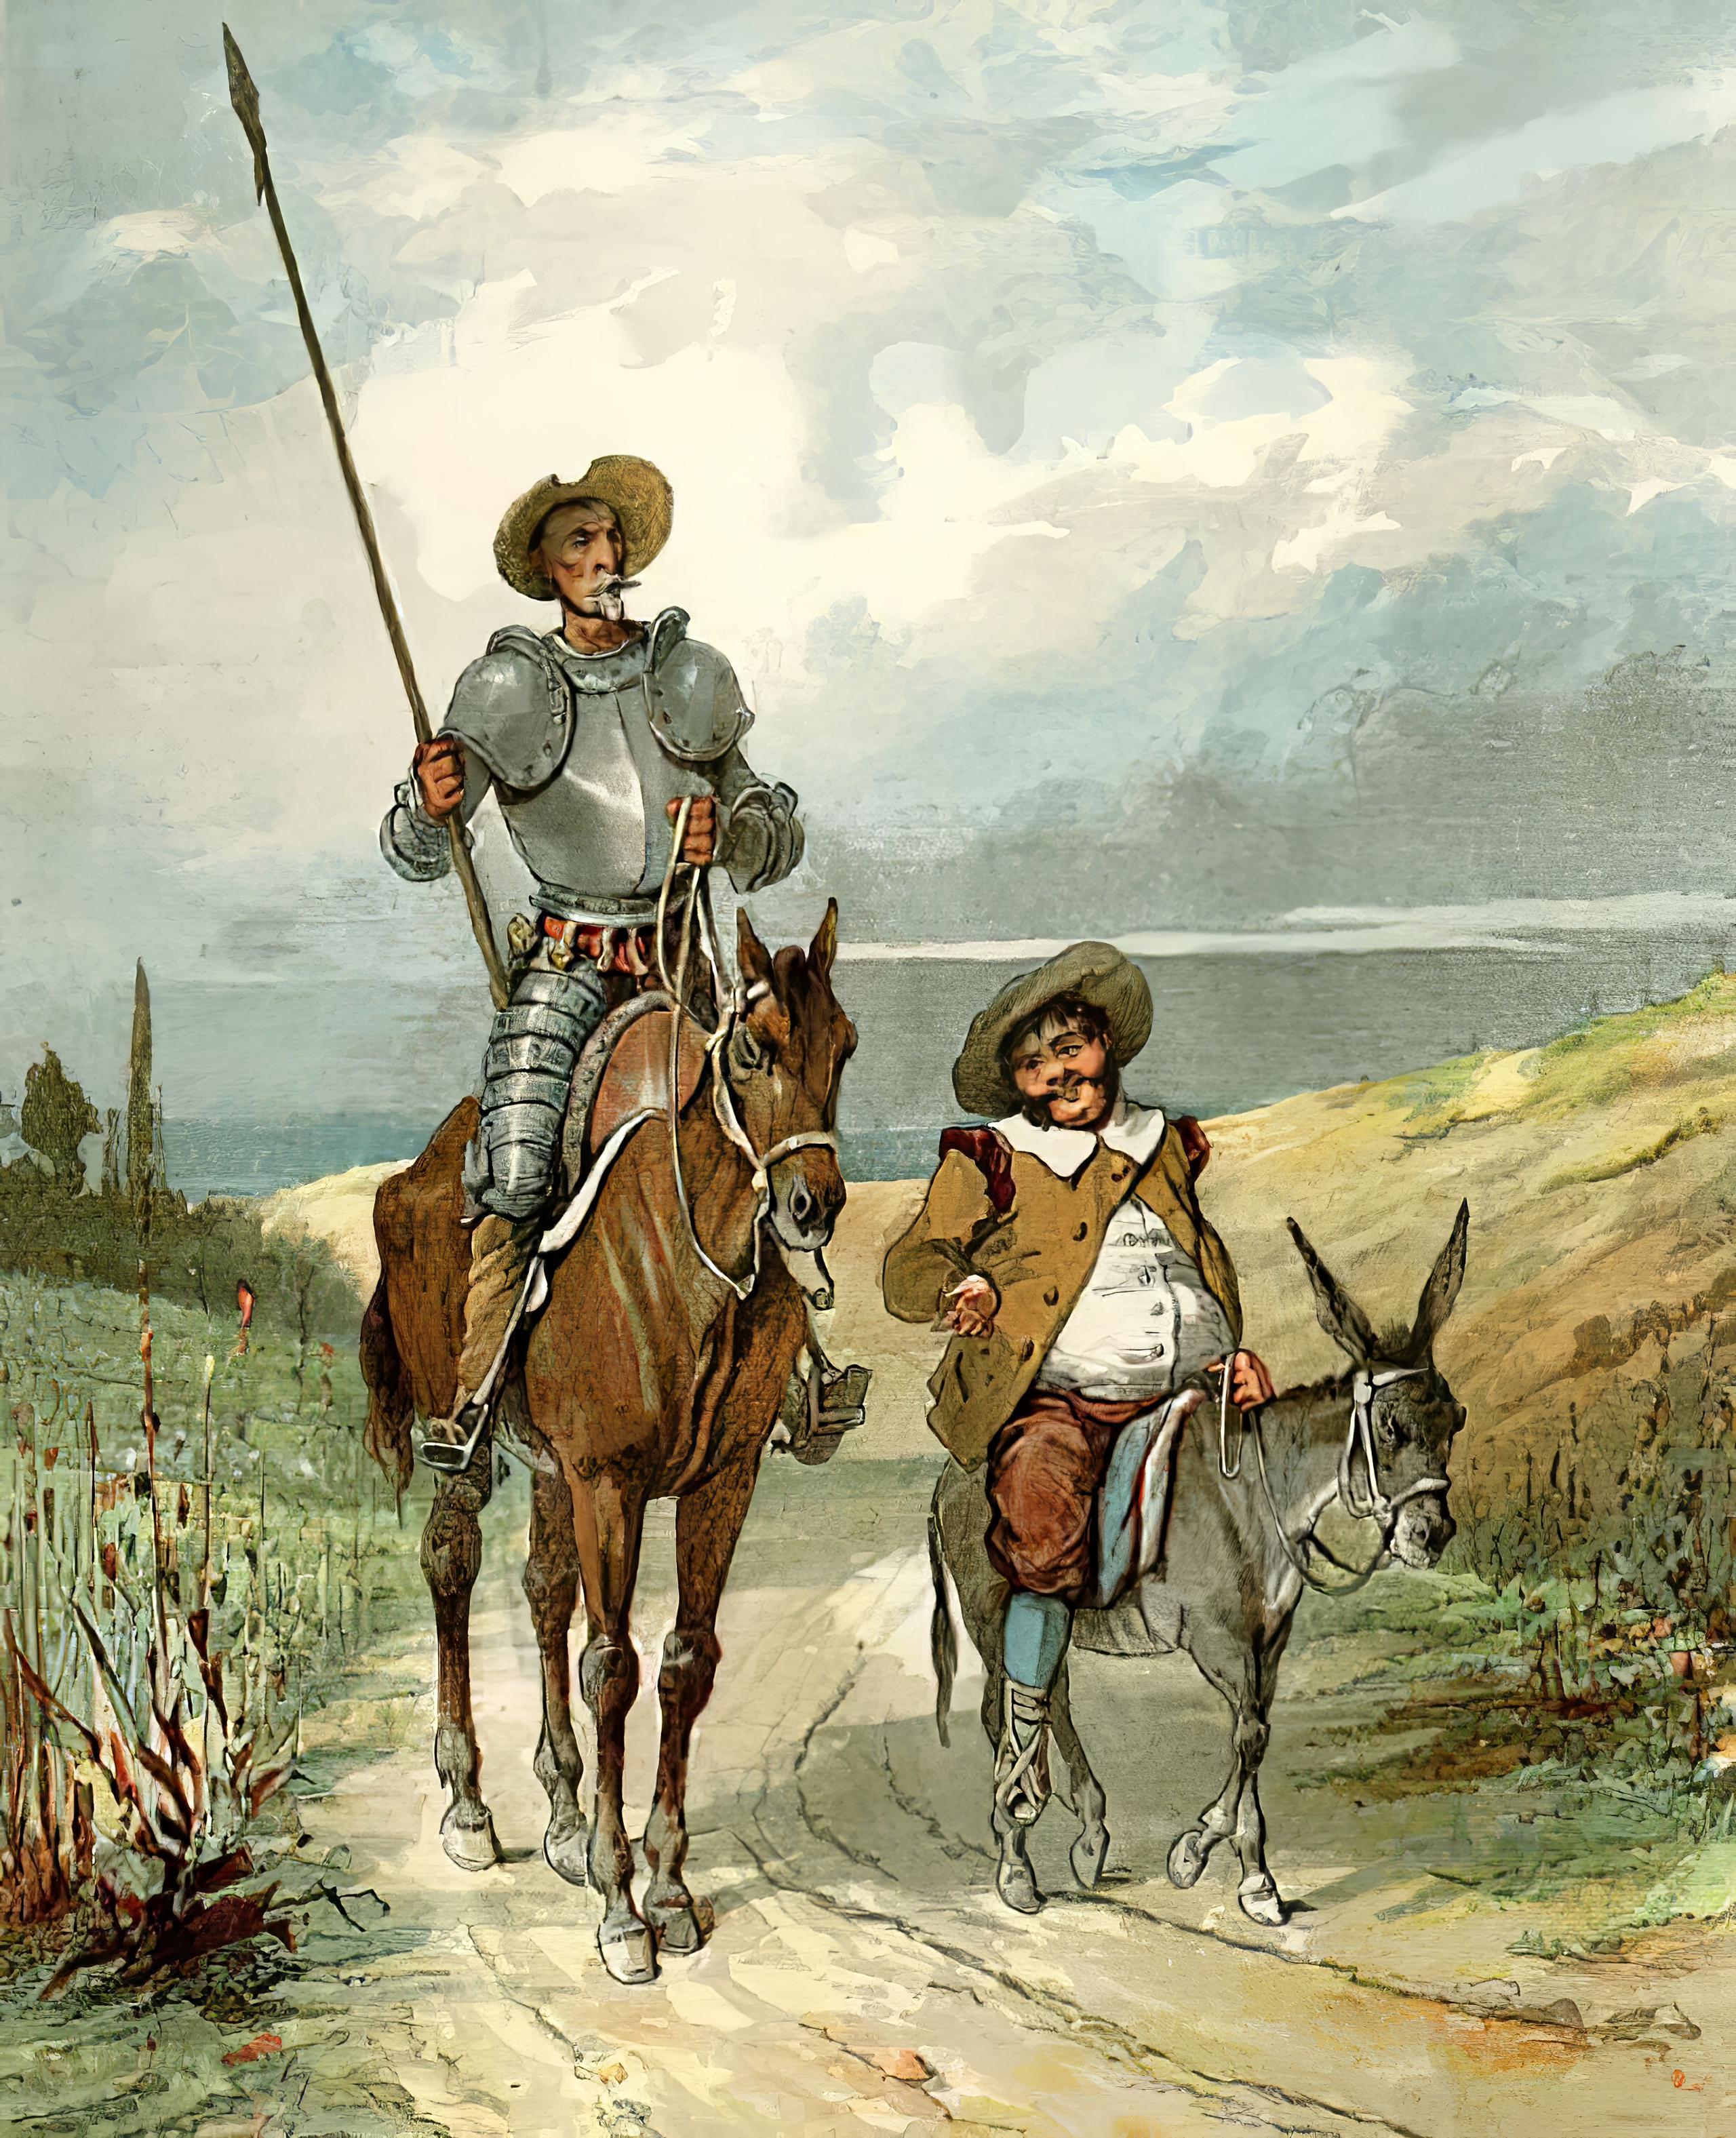 Il libro Don Quijote de la Mancha in russo